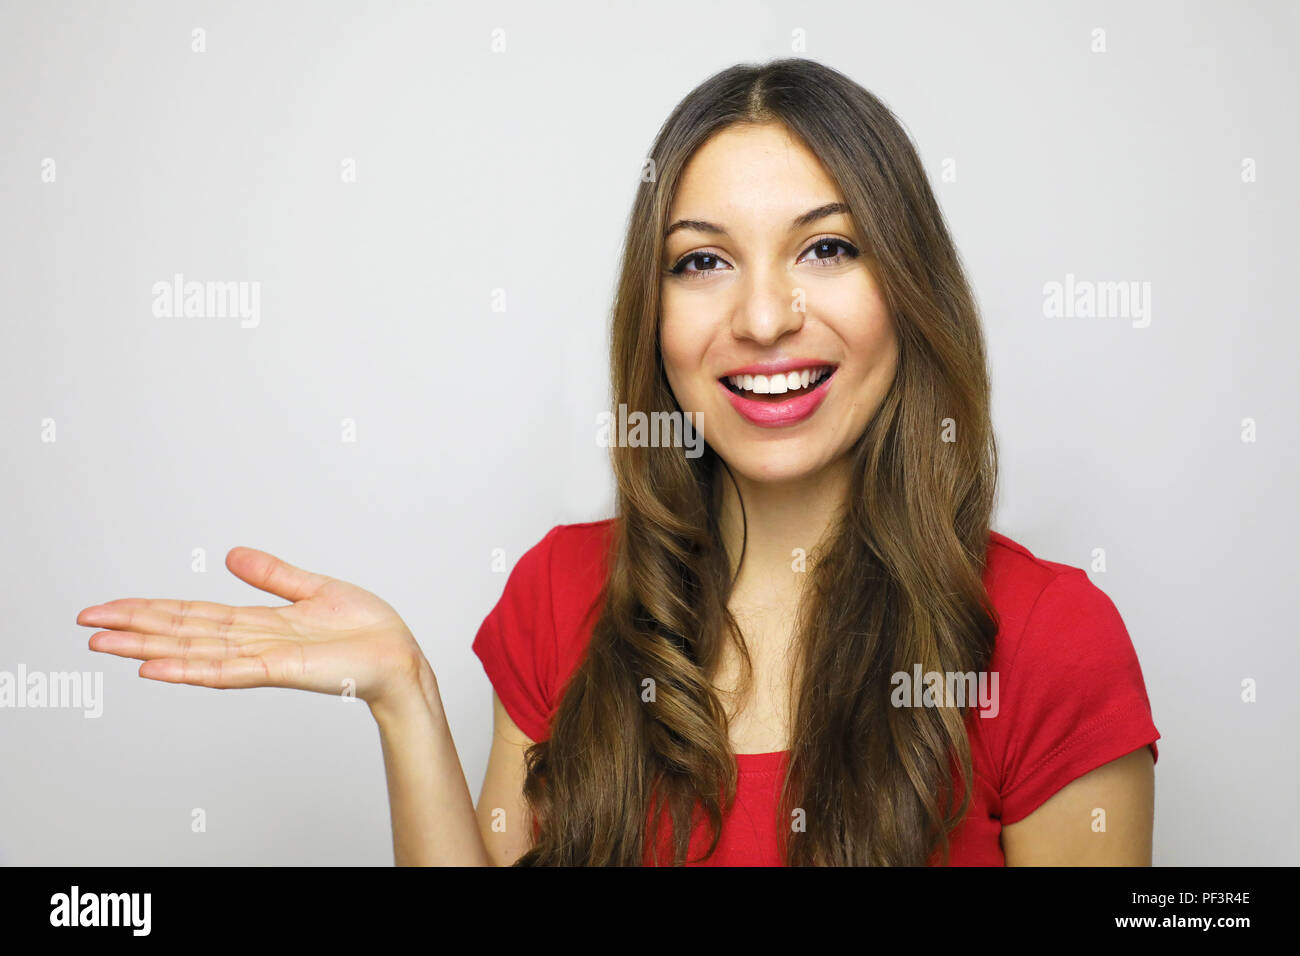 Bella donna che mostra il tuo prodotto su sfondo bianco. Donna felice che mostra aprire il palmo della mano con copia spazio per prodotto o testo. Foto Stock